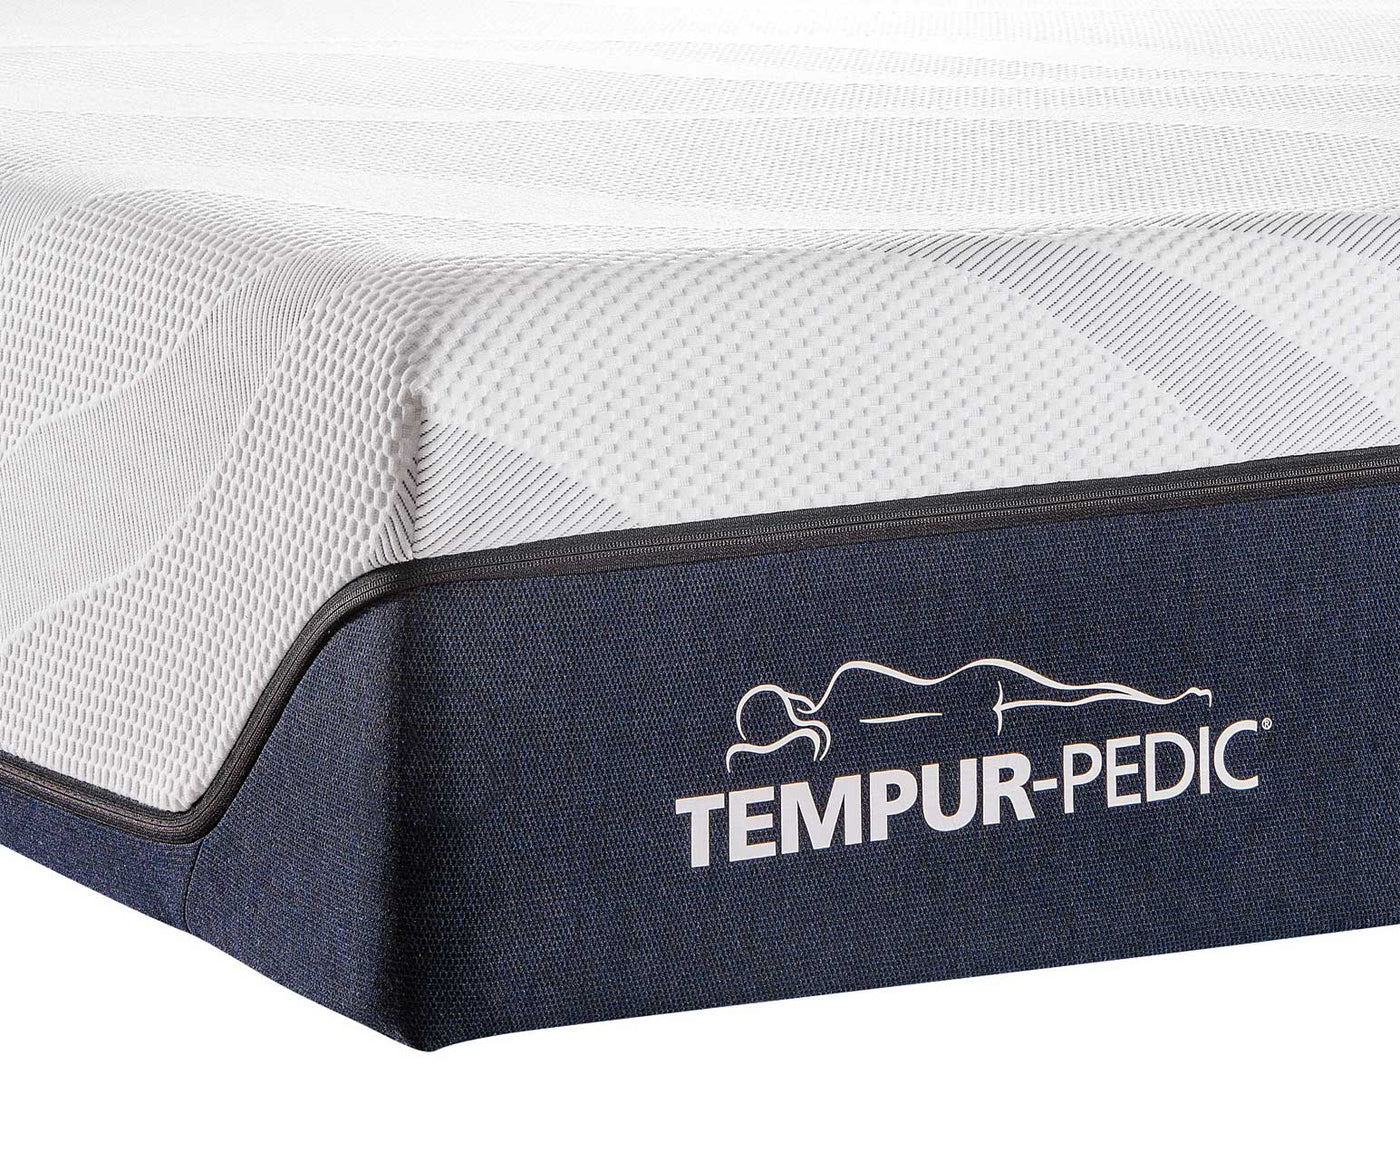 Tempur-Pedic LuxeAlign Firm Queen Mattress